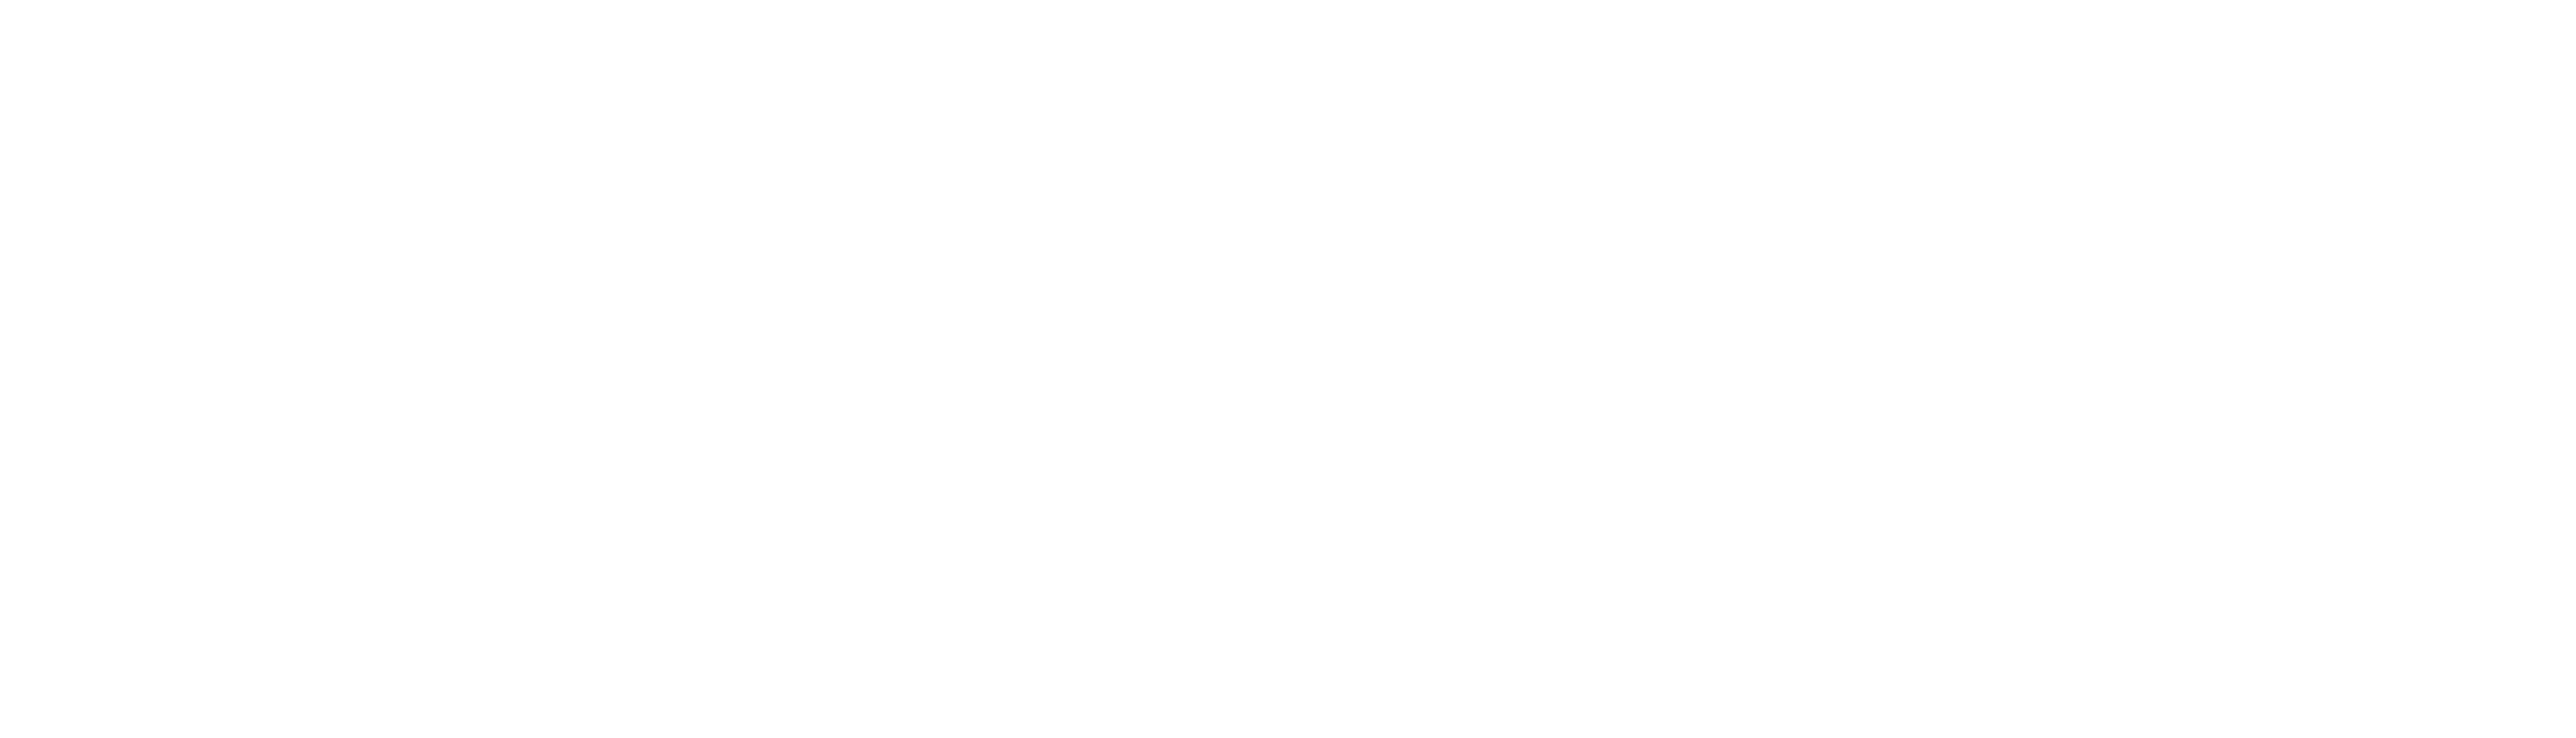 (주)씨에이랩-국내 고효율 필터 제조(공기/물)